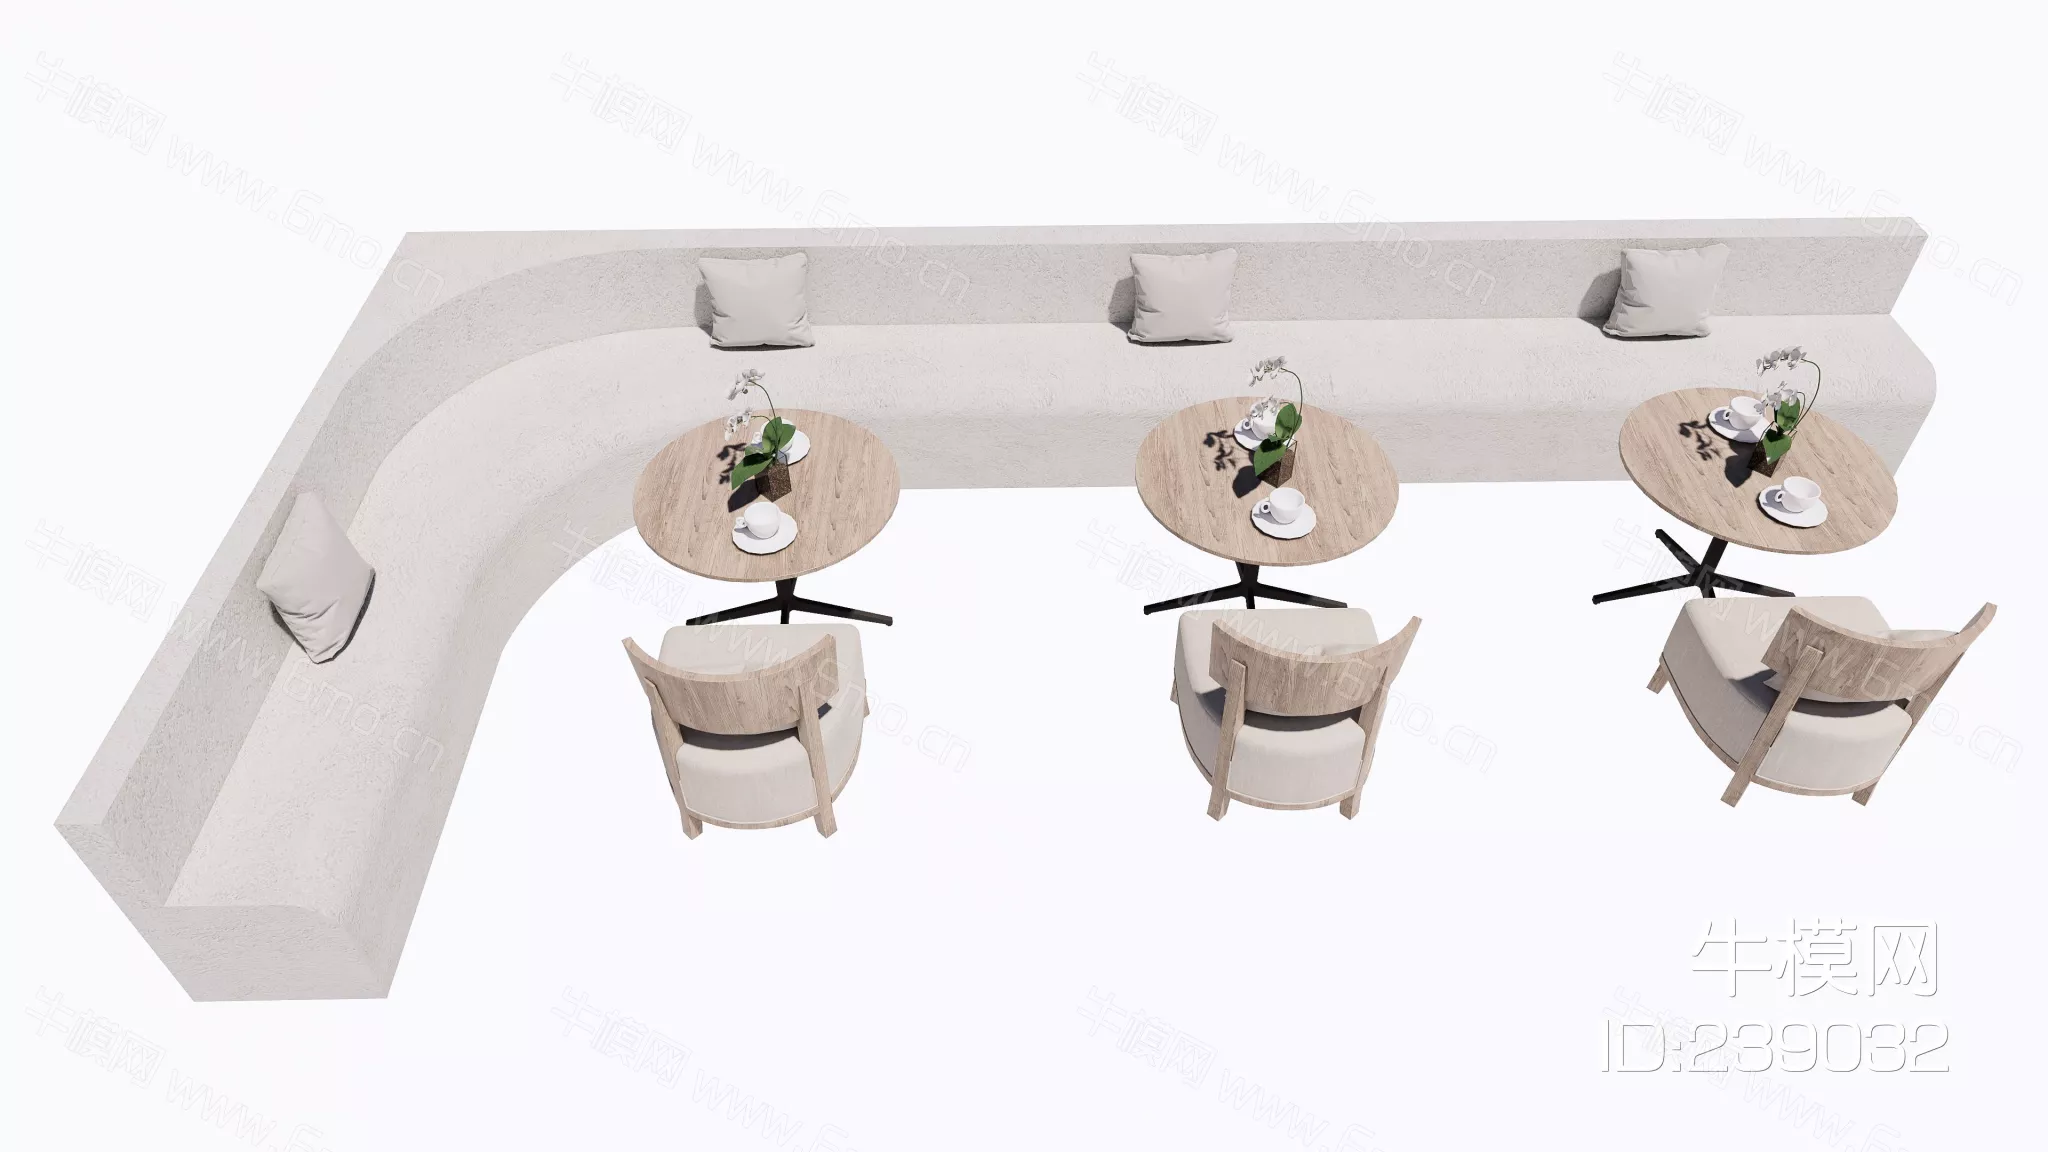 MODERN DINING TABLE SET - SKETCHUP 3D MODEL - ENSCAPE - 239032